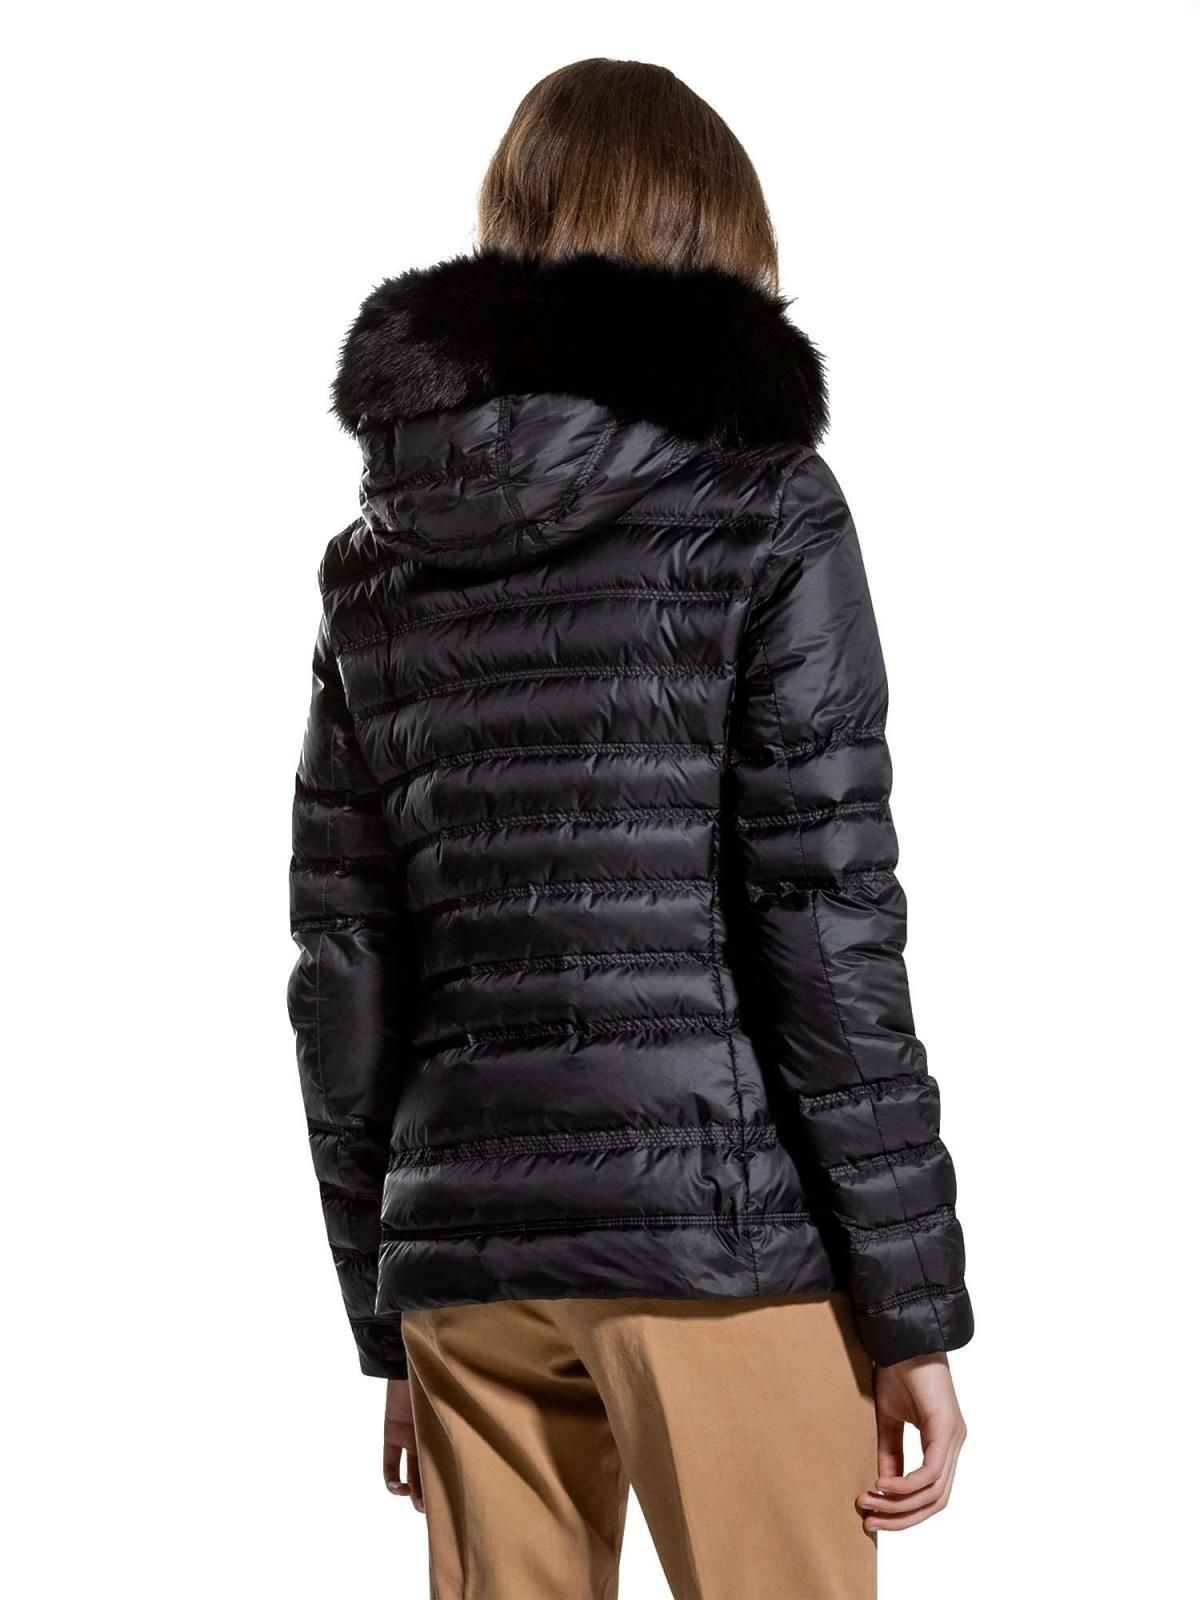 Chic Black Fur-Trimmed Winter Jacket